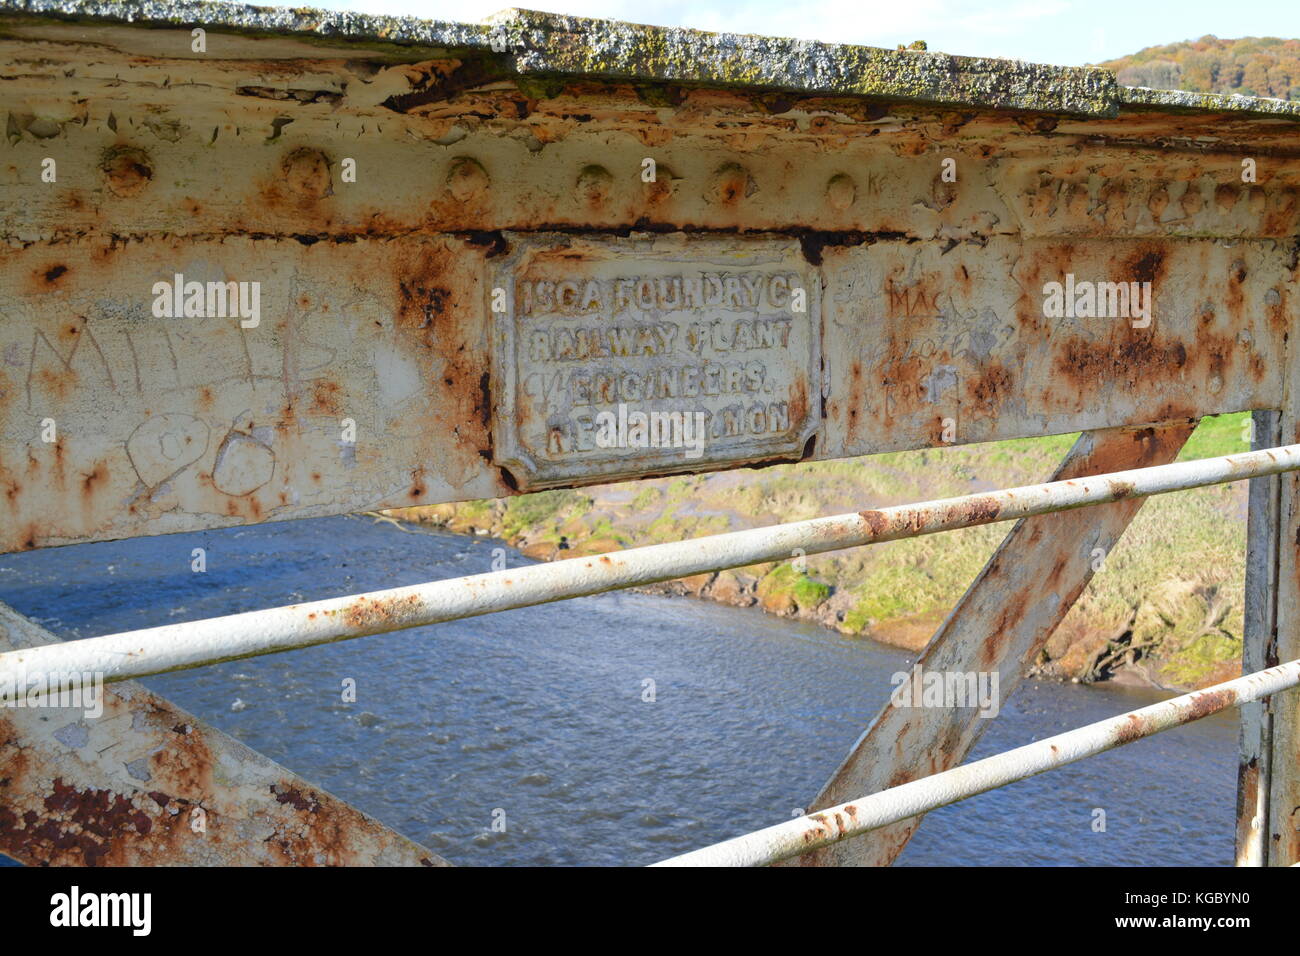 Verwittertem metall Giesserei signage Namen Plaque und genietet detailliert auf Eisen Brücke über den Fluss Wye in der Nähe von tintern Monmouthshire uk Vereinigtes Königreich Stockfoto